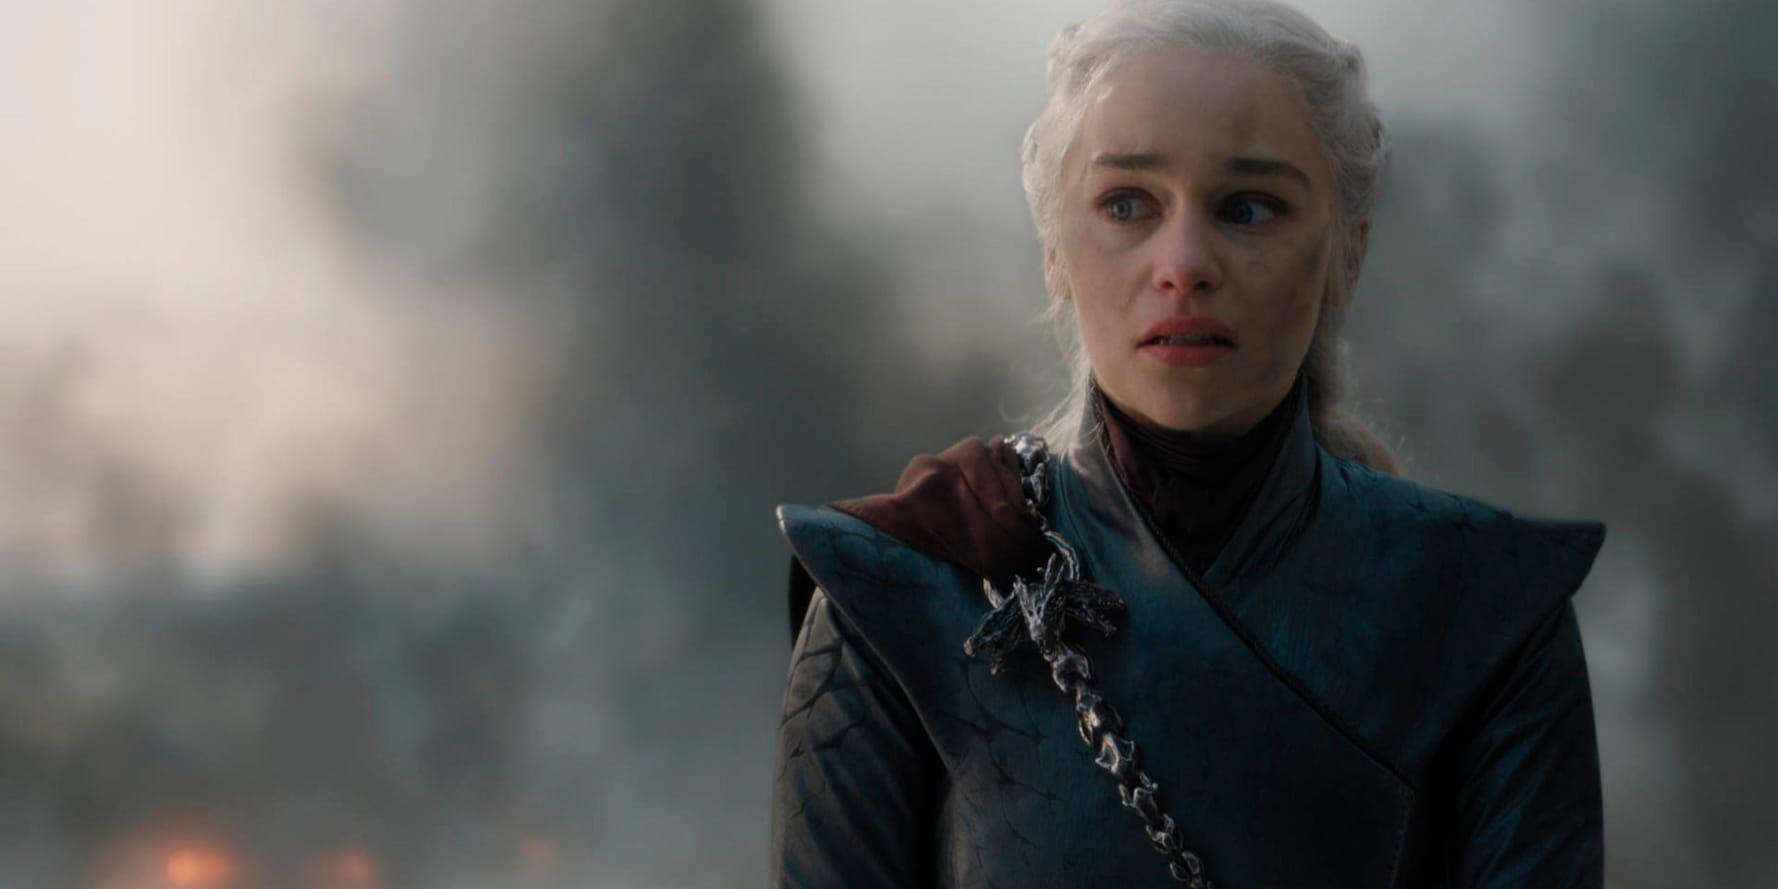 Emilia Clarke spelar Daenerys Targaryen i "Game of thrones". Många fans är dock missnöjda med seriens sista säsong och vill rent av att den görs om. Pressbild.